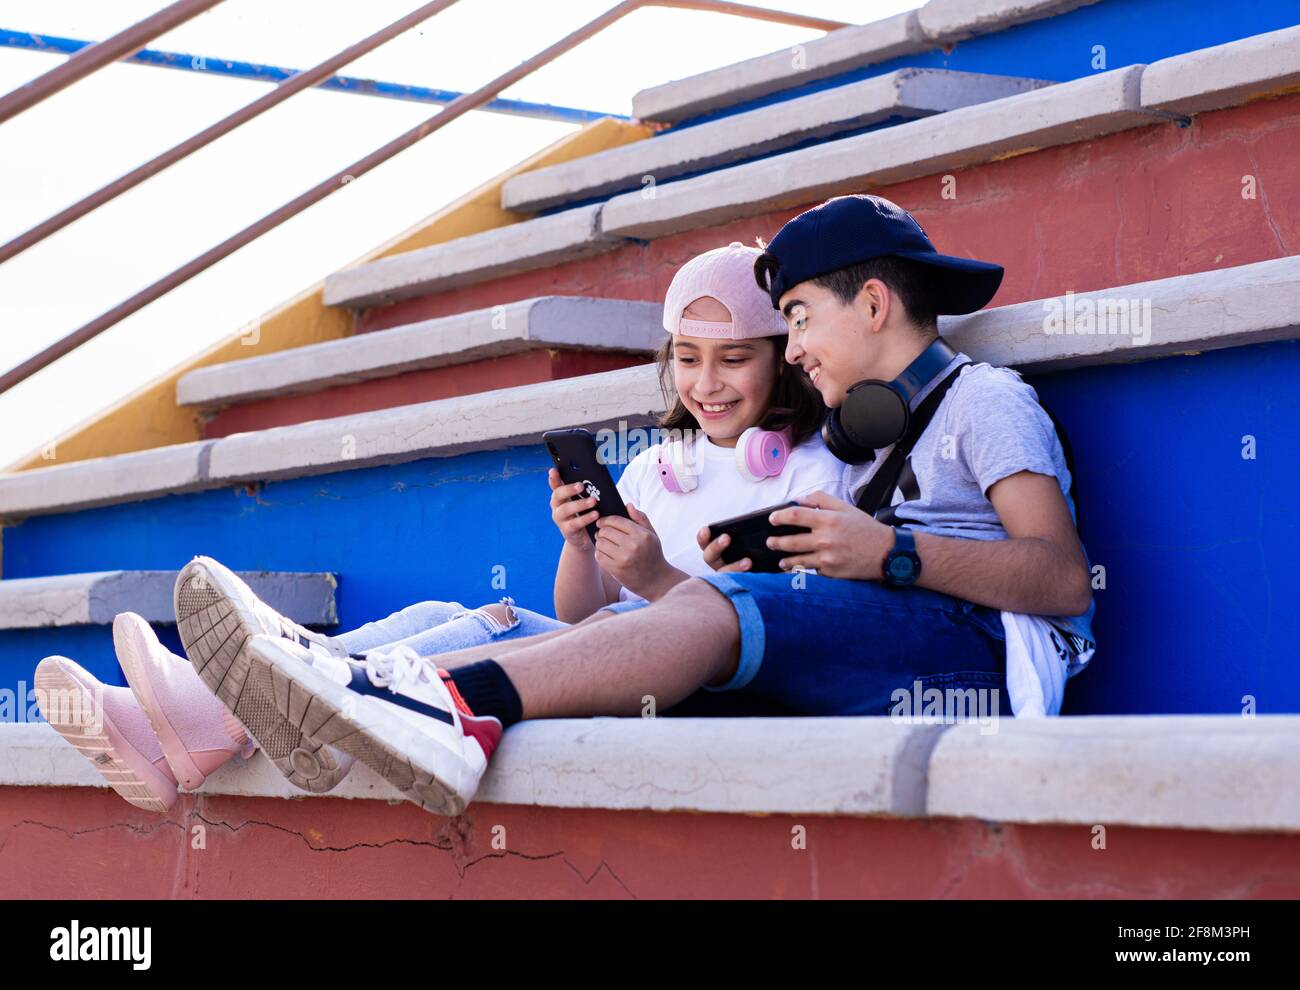 Zwei kaukasische Jugendliche, sehr lächelnd, mit mobilen Geräten und Kopfhörern, zeigen sich ihre Handys auf der Tribüne. Stockfoto